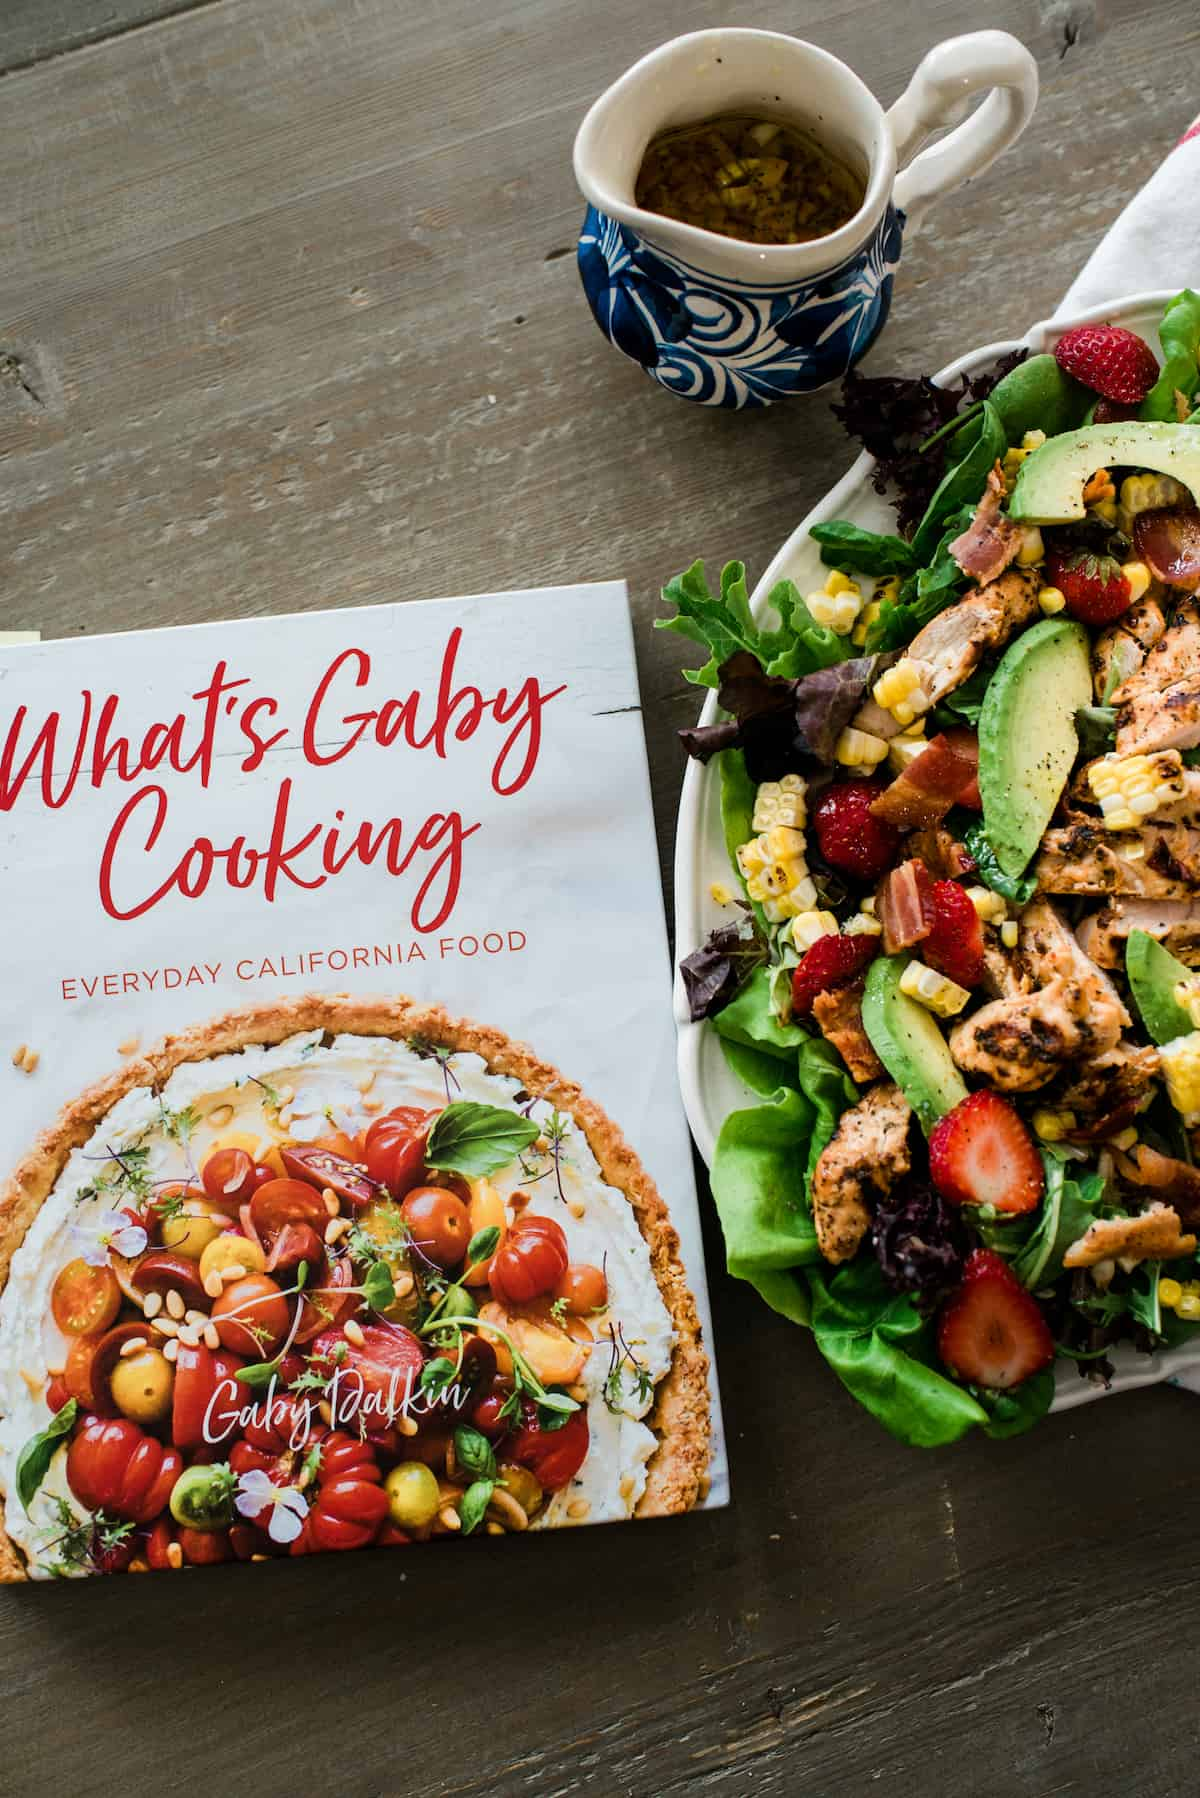 o que é gaby cookbook ao lado da salada de frango chipotle de verão